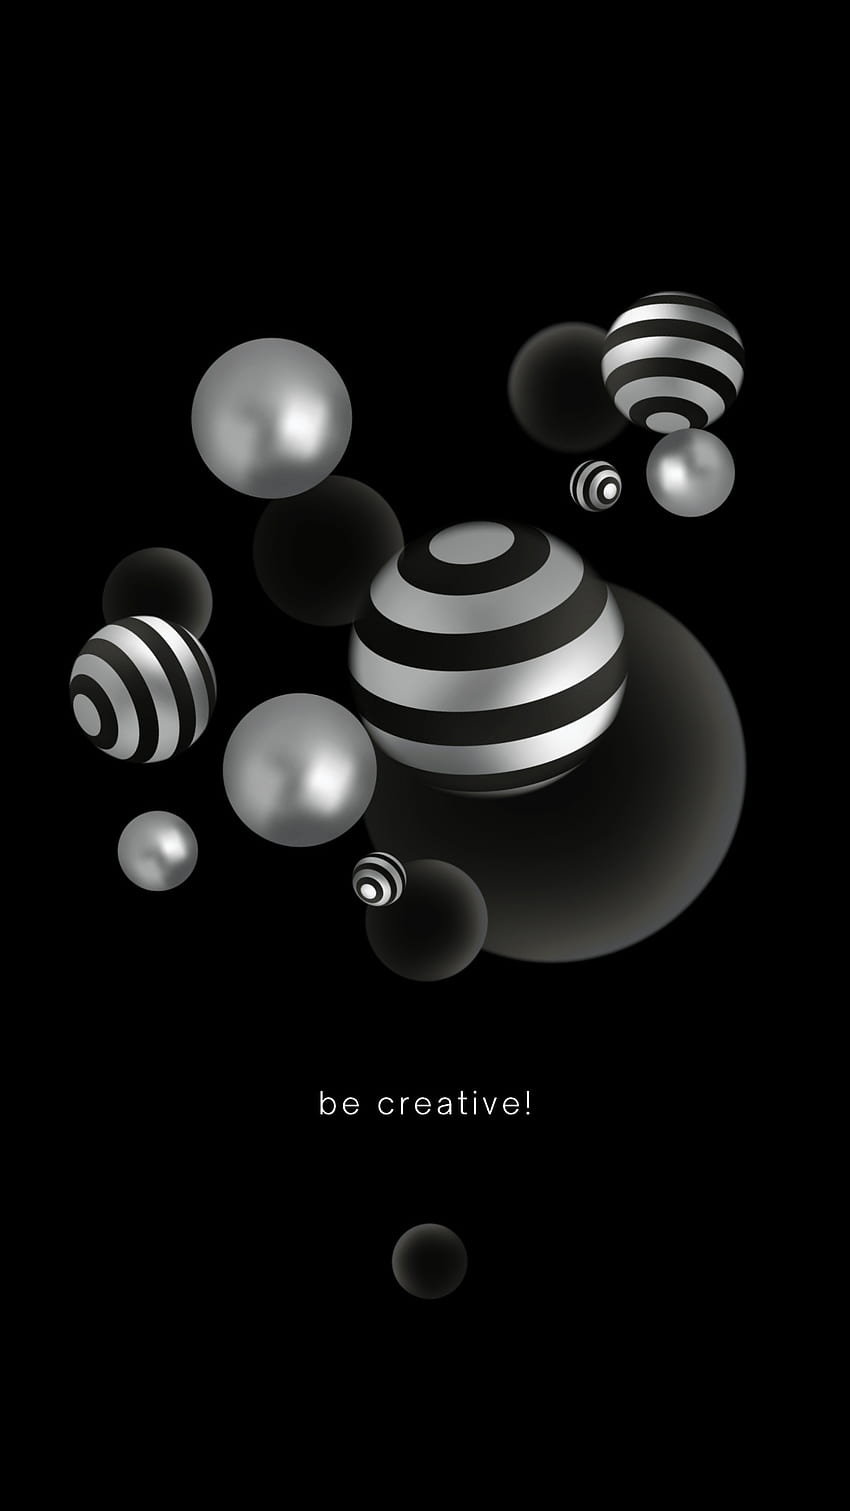 Be Creative, アート, 引用, ラウンド, Android, 科学, 黒, 円, ことわざ, iPhone, スフィア HD電話の壁紙